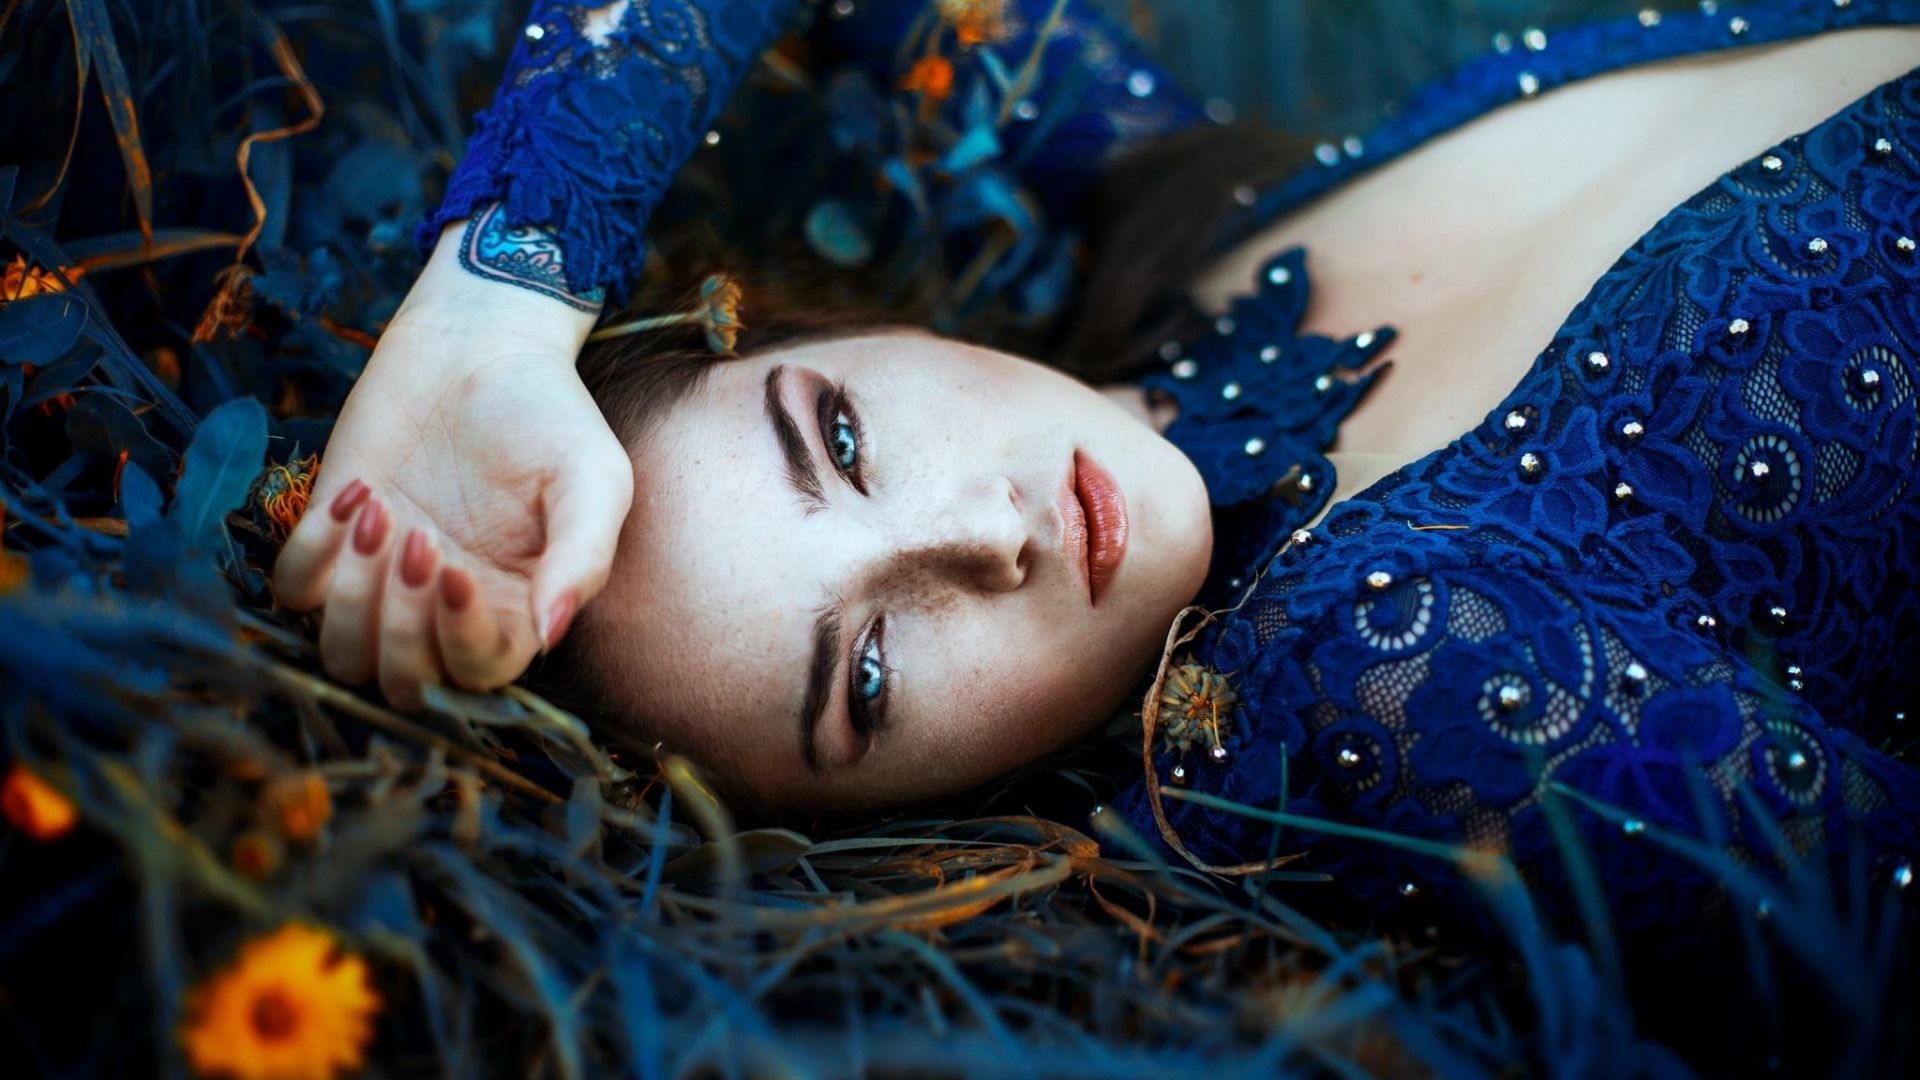 Wallpaper Blue eye, woman, lying down